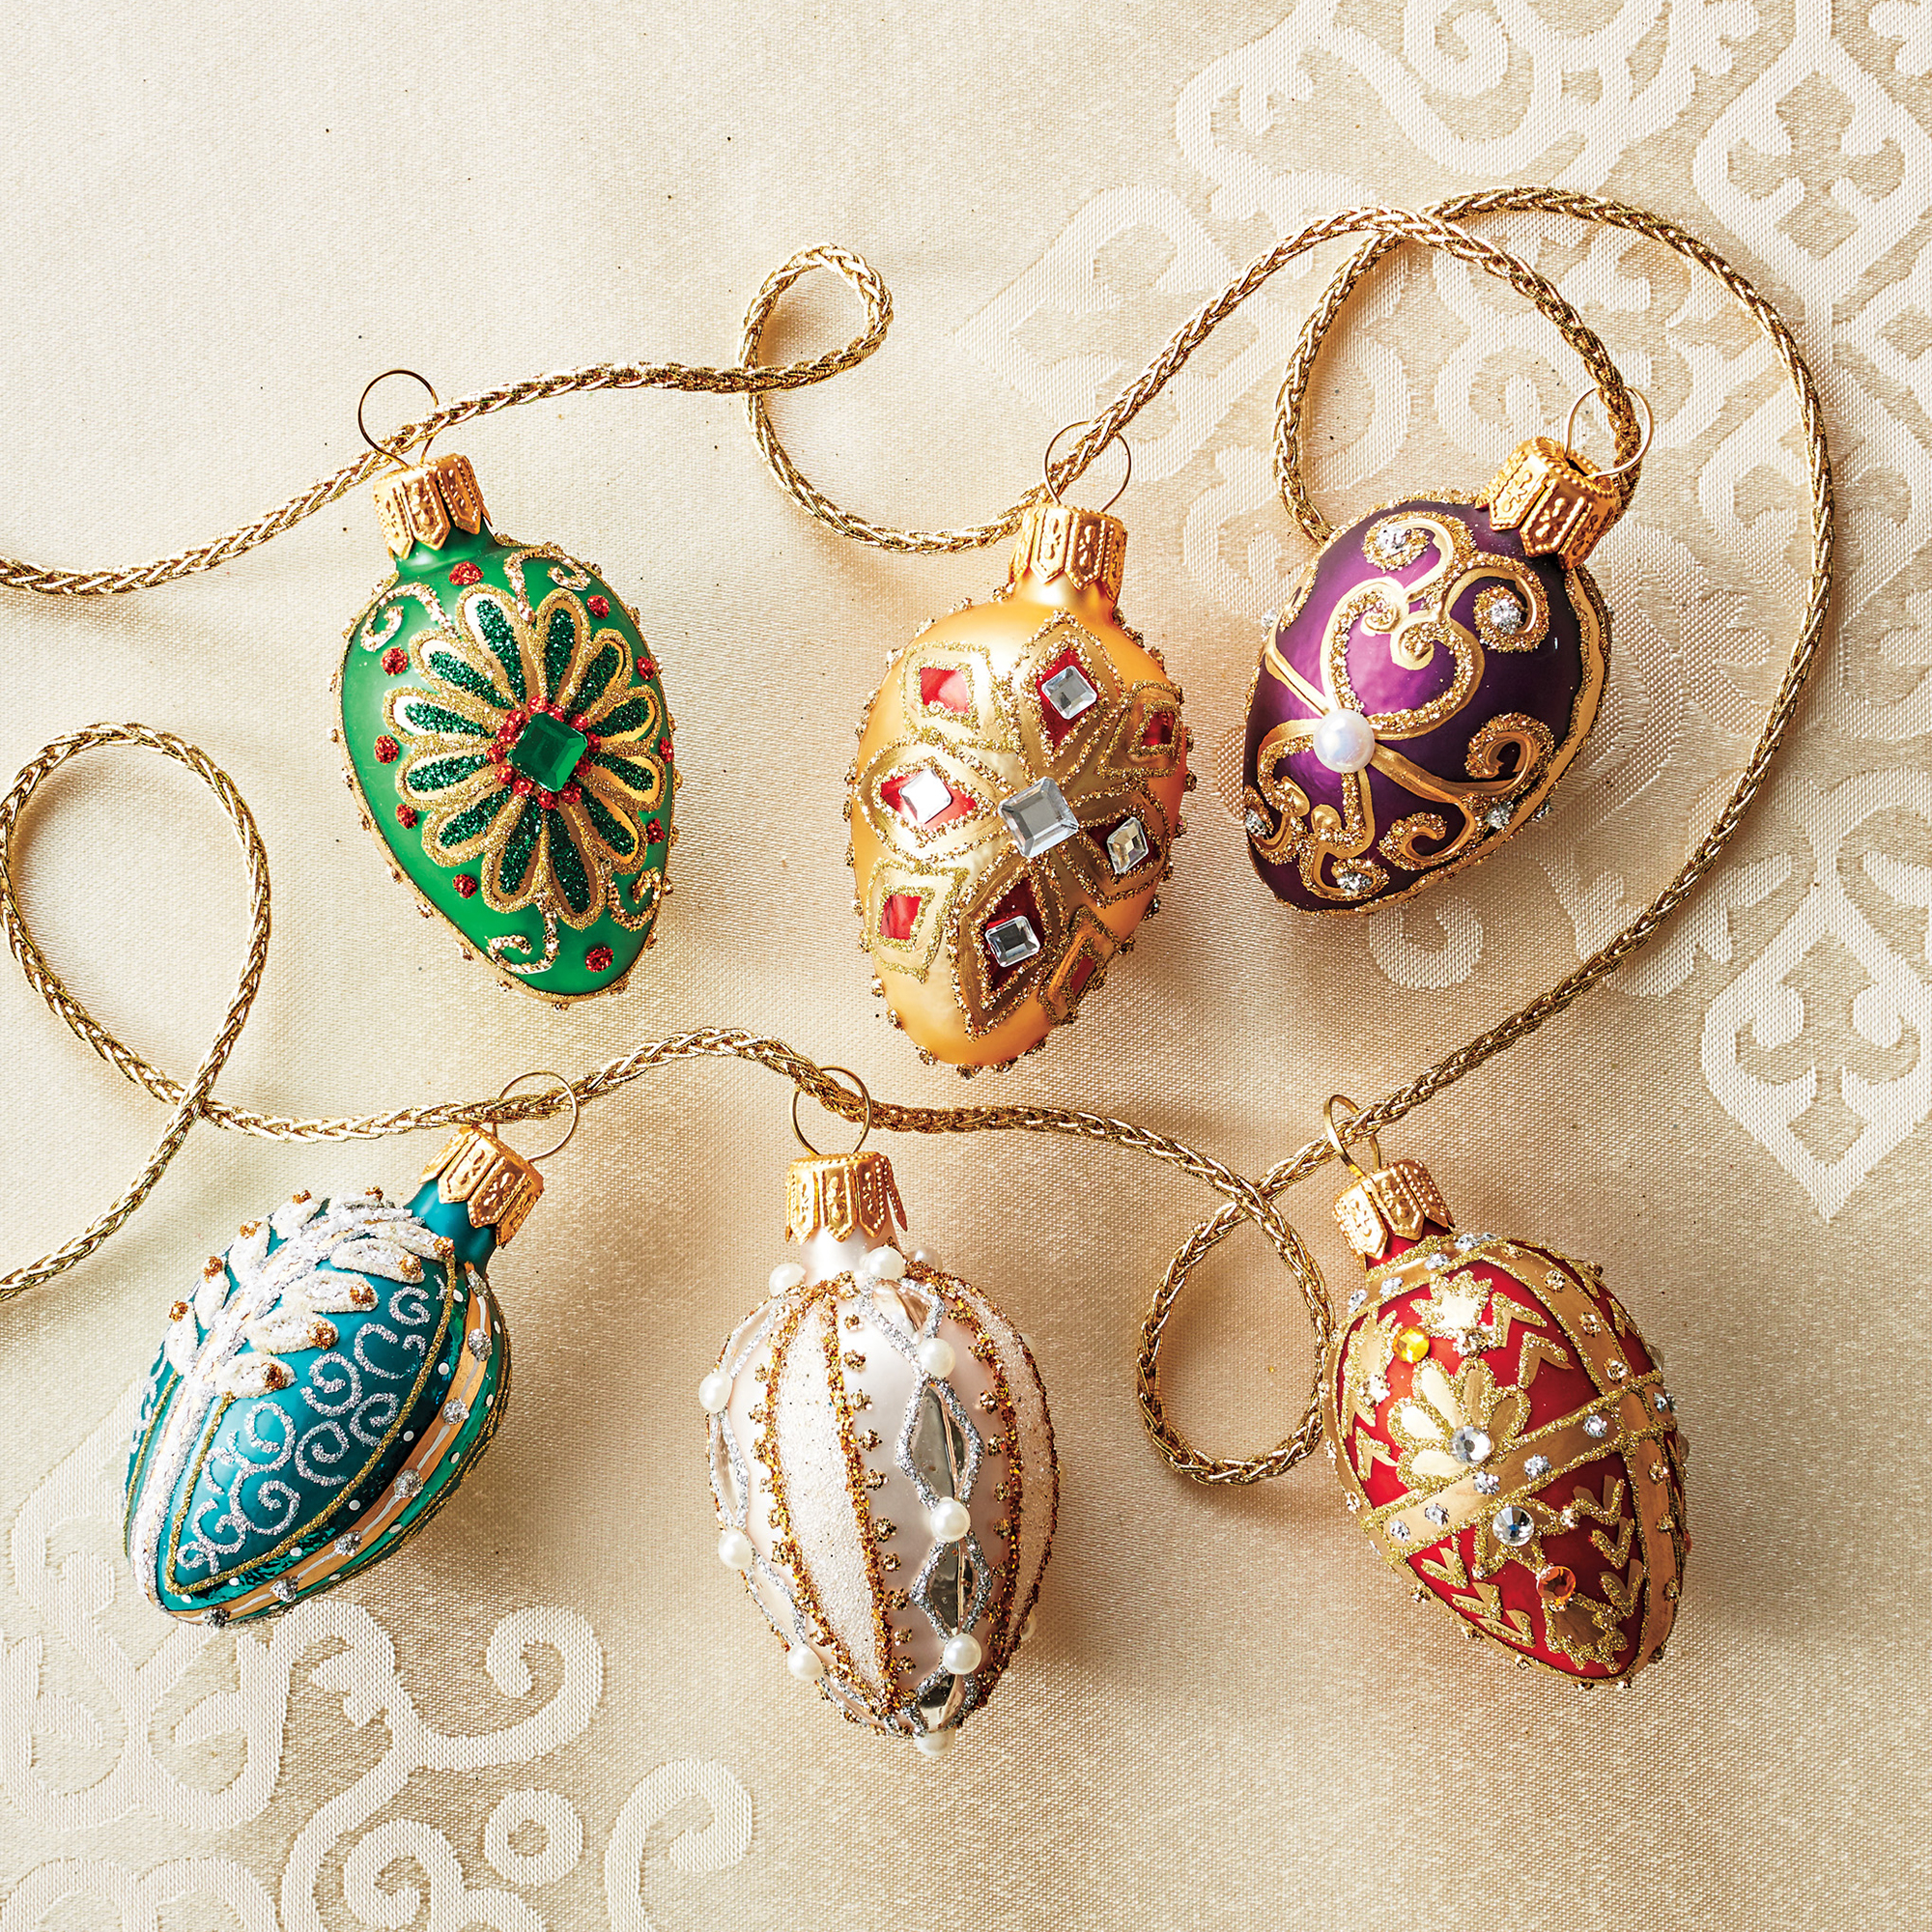 Celebration Bejeweled Egg Ornaments | Gump's